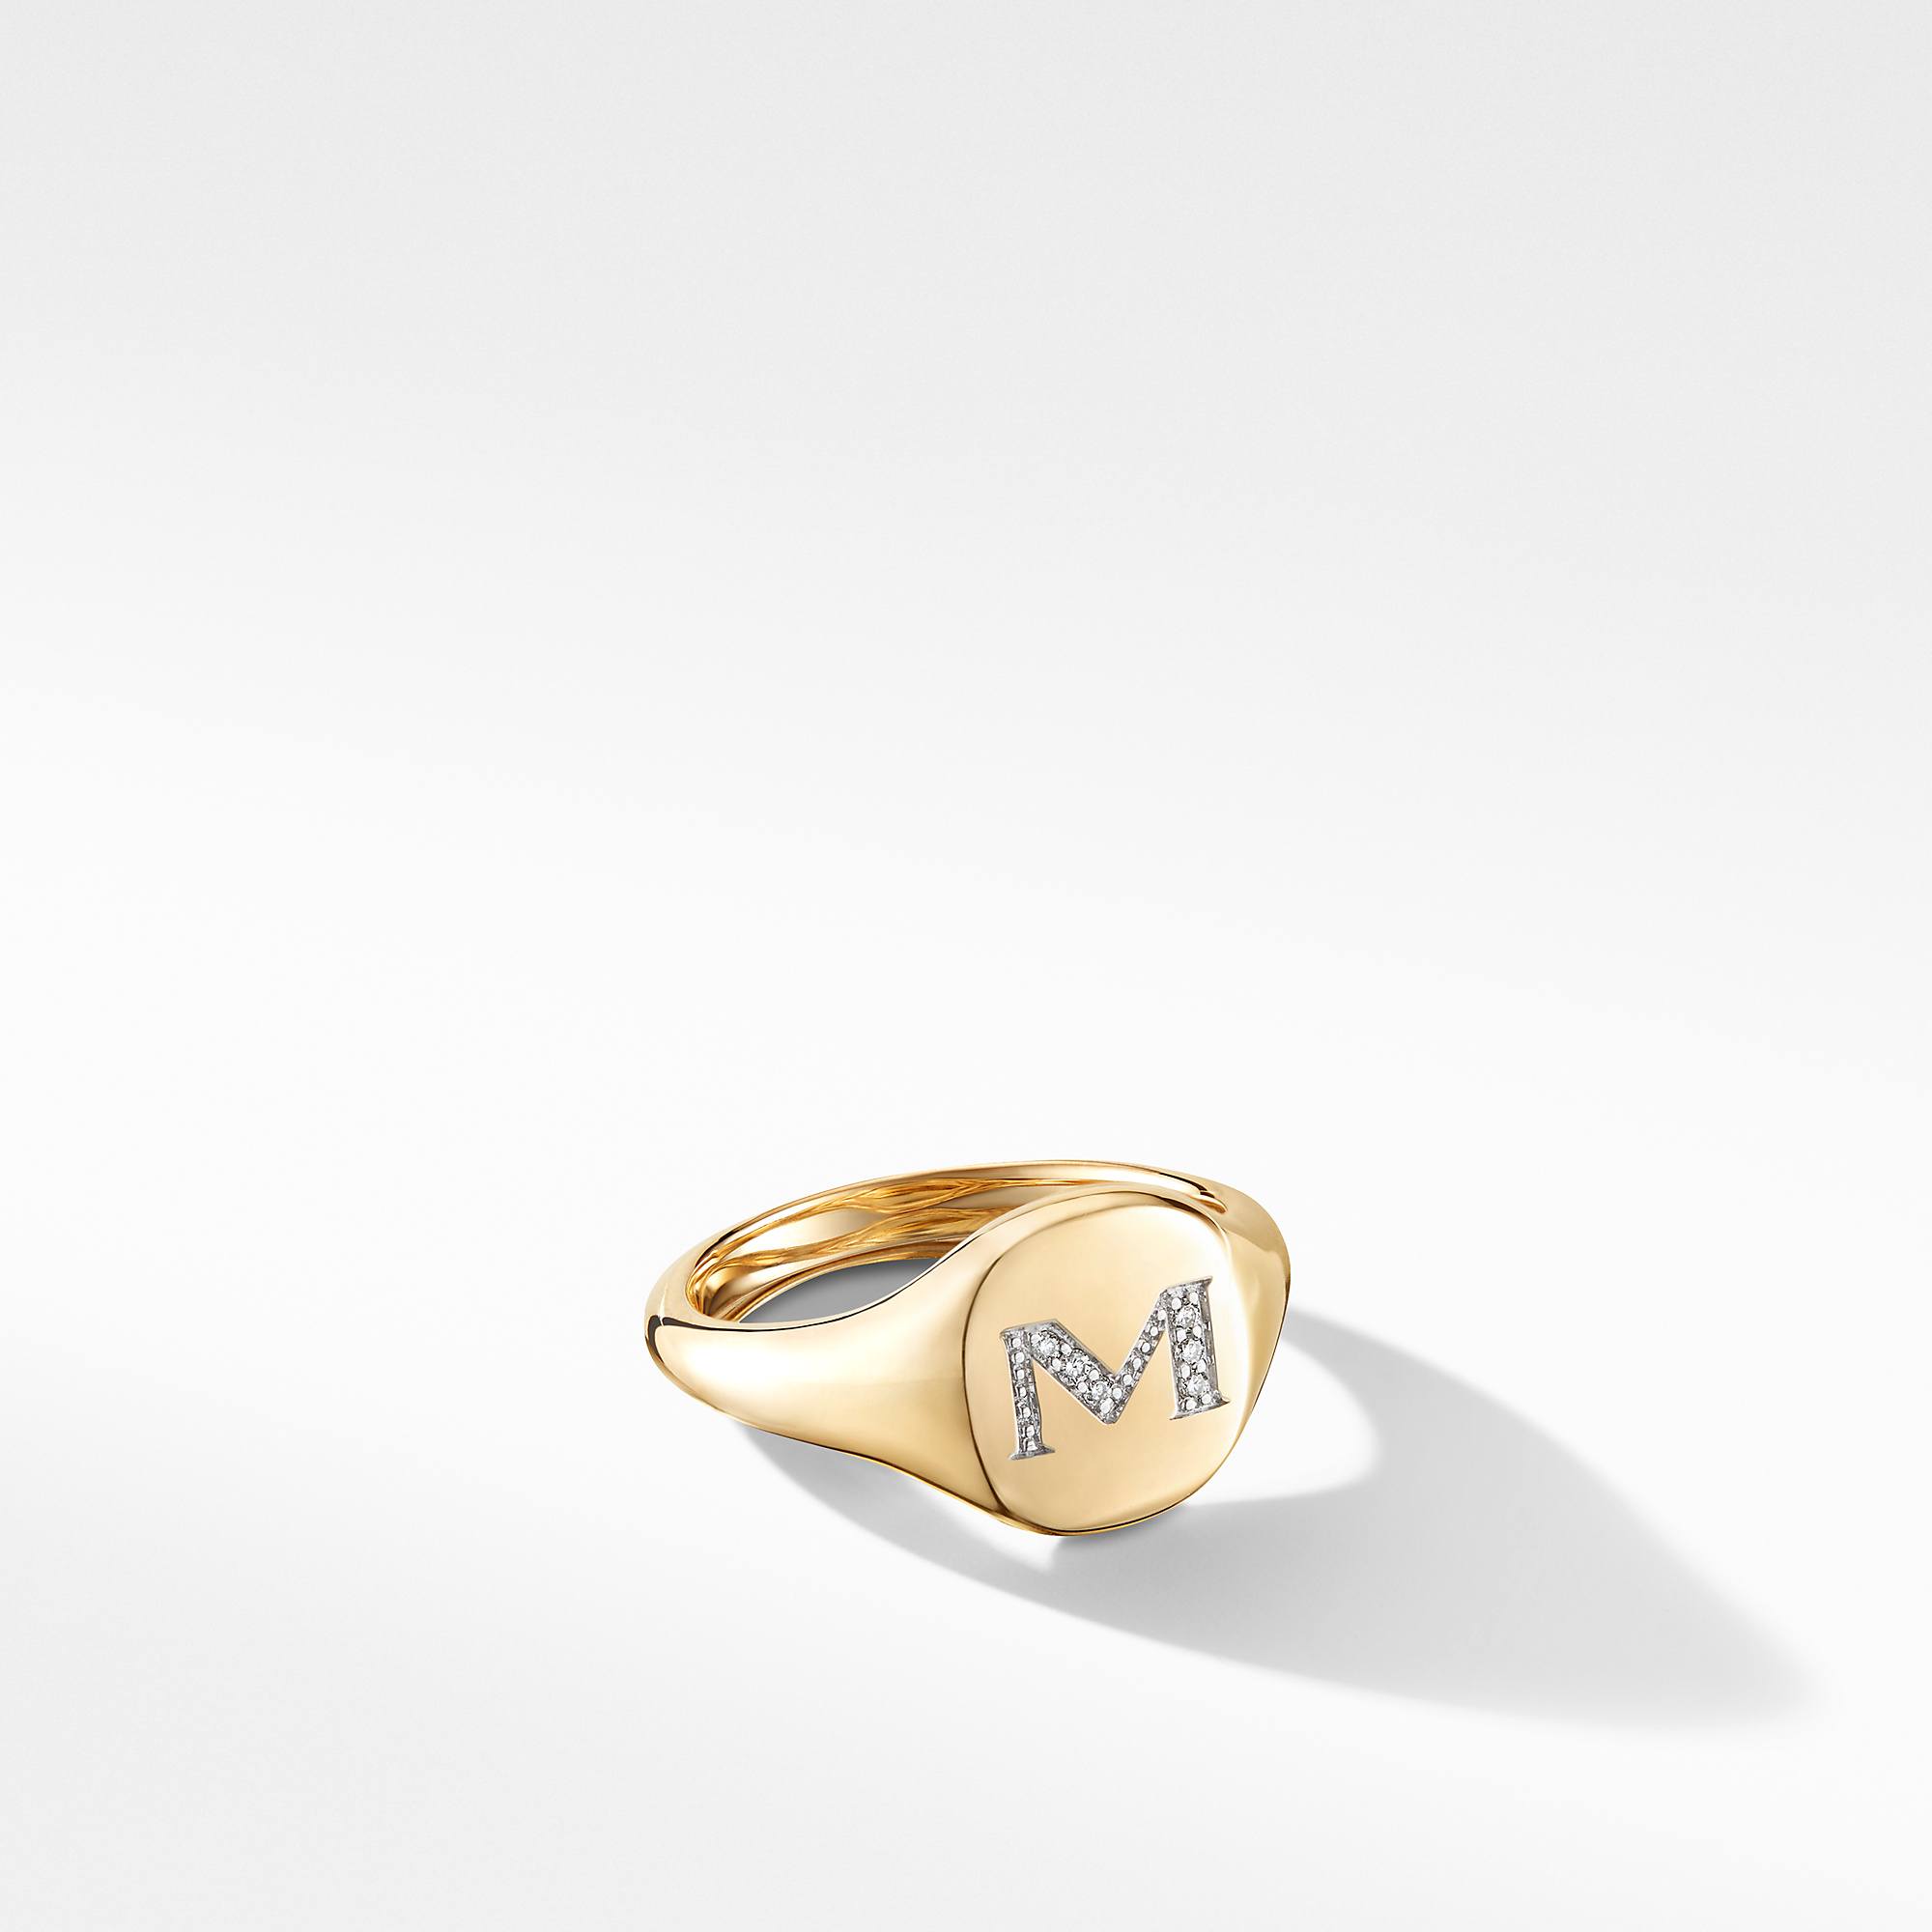 David Yurman Mini DY "M" initial Pinky Ring in 18K Yellow Gold with Diamonds 0